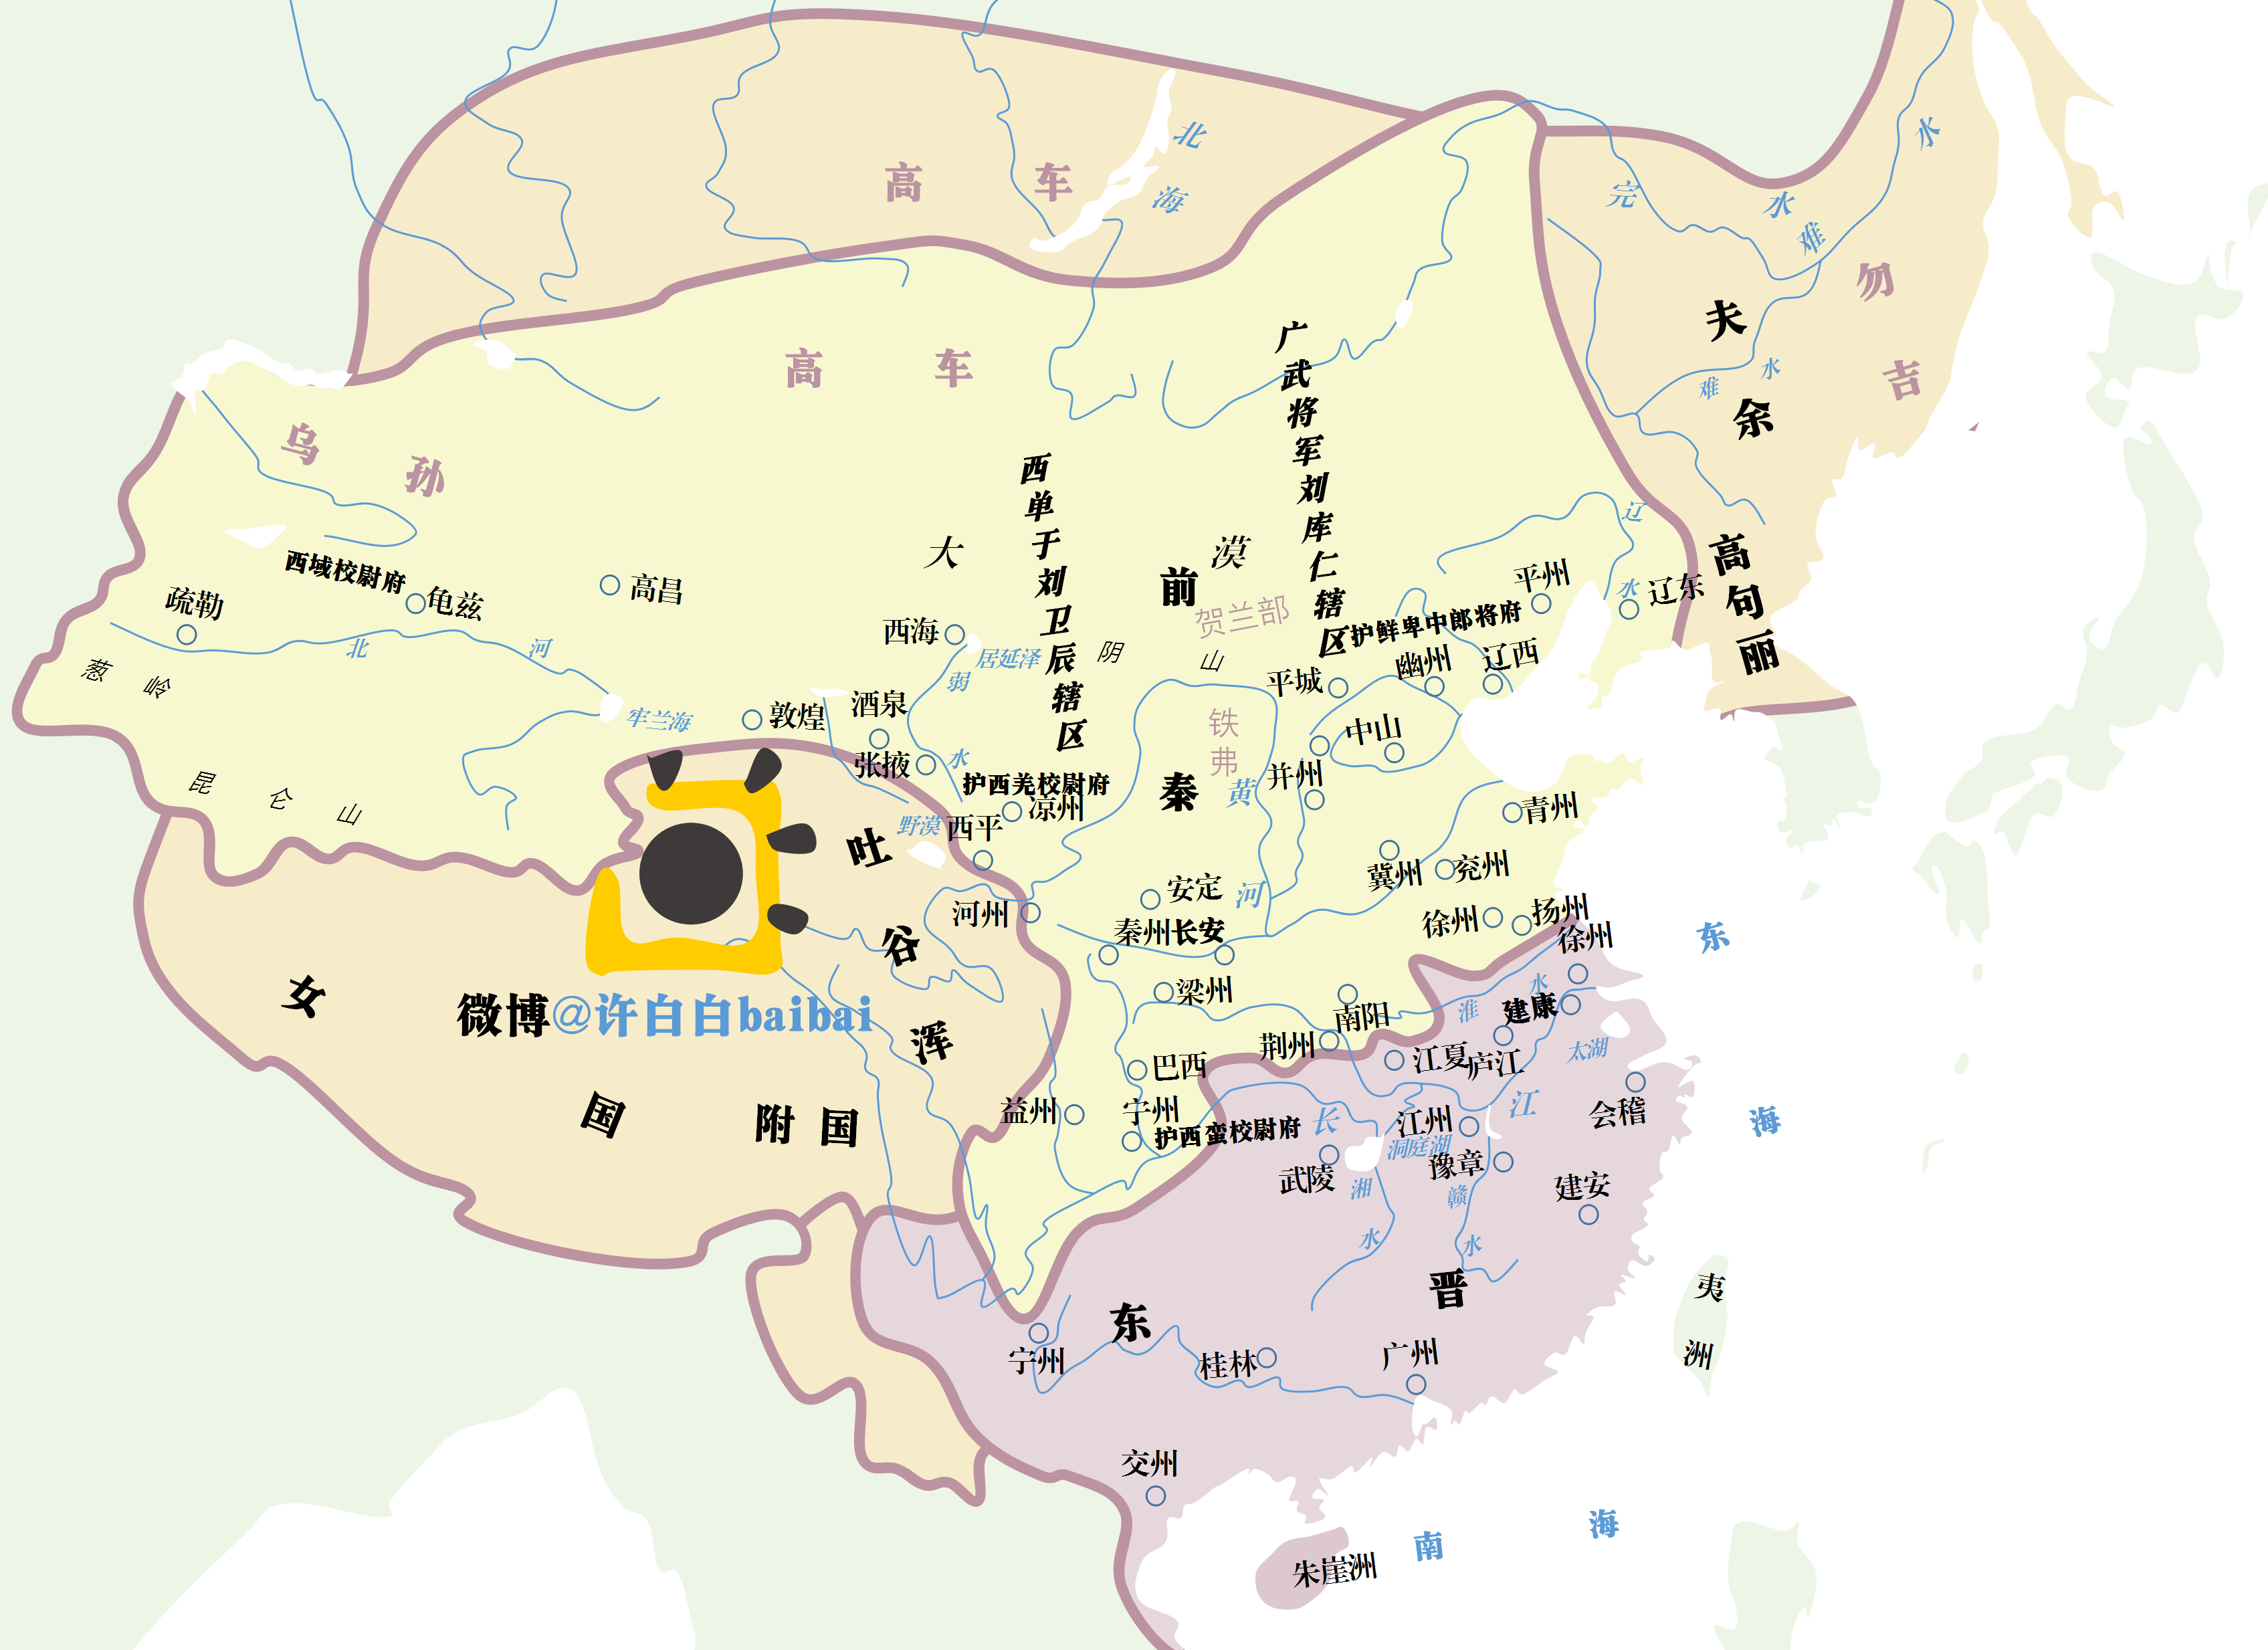 【地图百绘】许白白主要历史地图作品整理(截止2017.10.07)